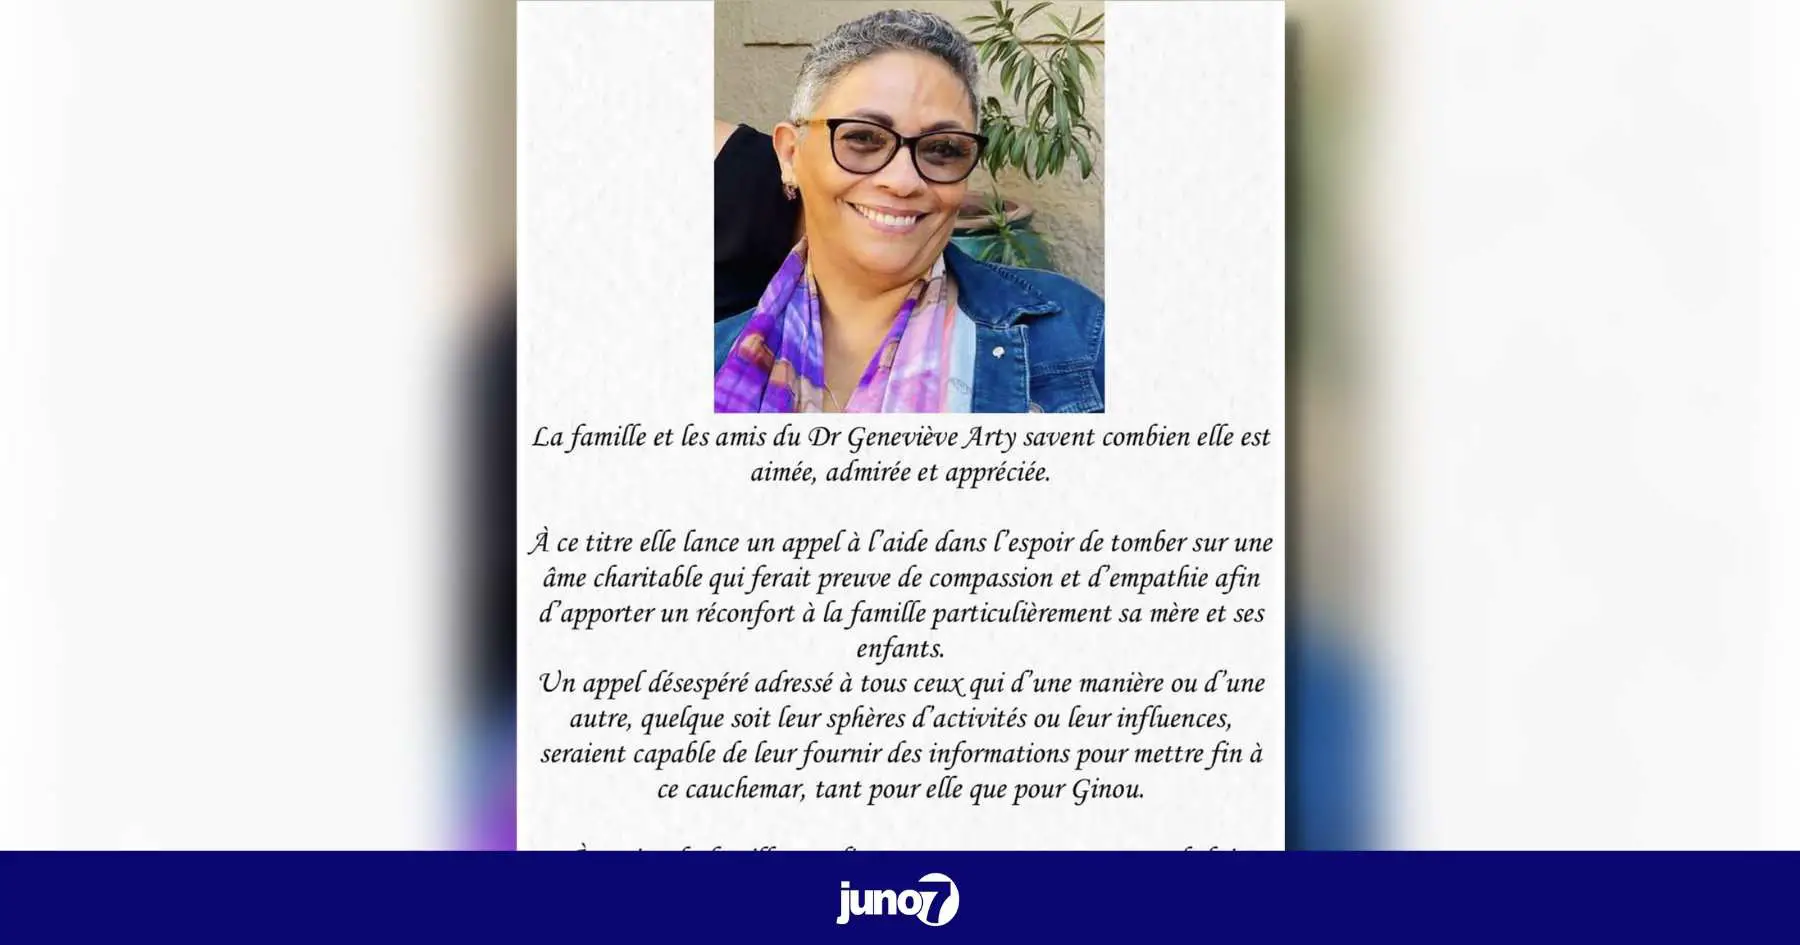 La Fondation St Luc appelle à la libération du Dr Geneviève Arty enlevée depuis le 2 février 2023